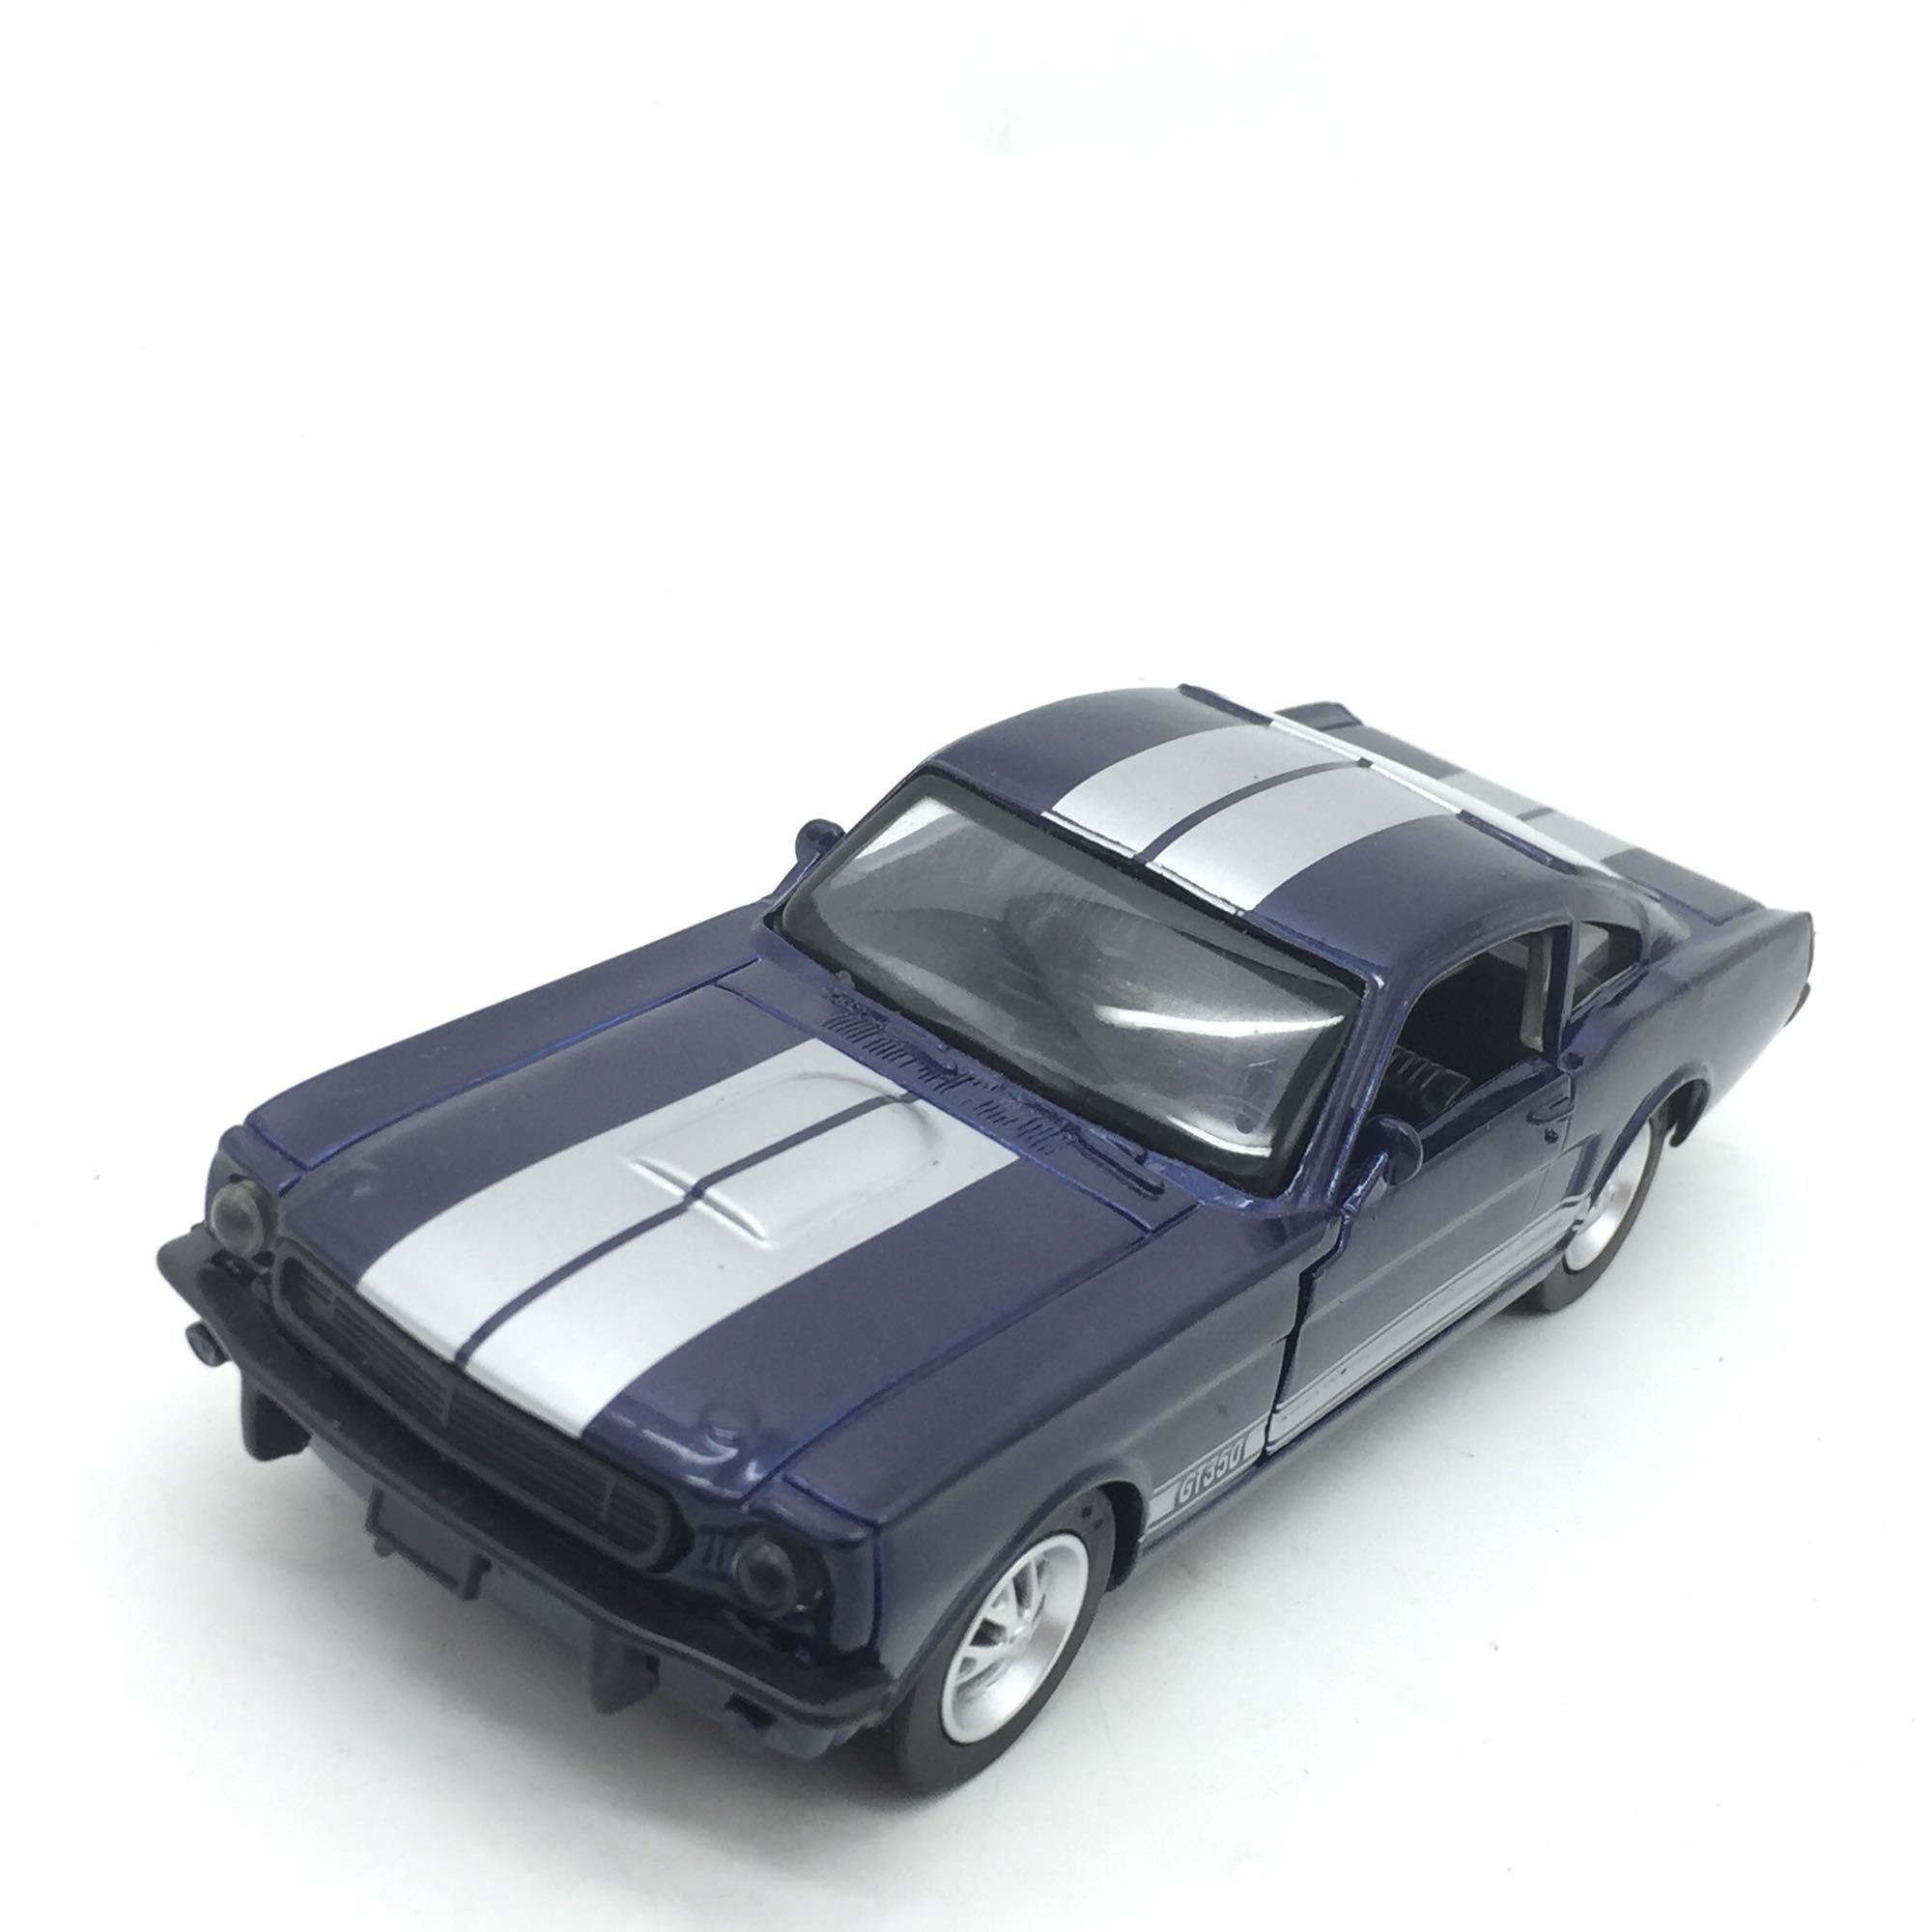 1/32福特GT350 合金汽车模型 长14cm - 图1